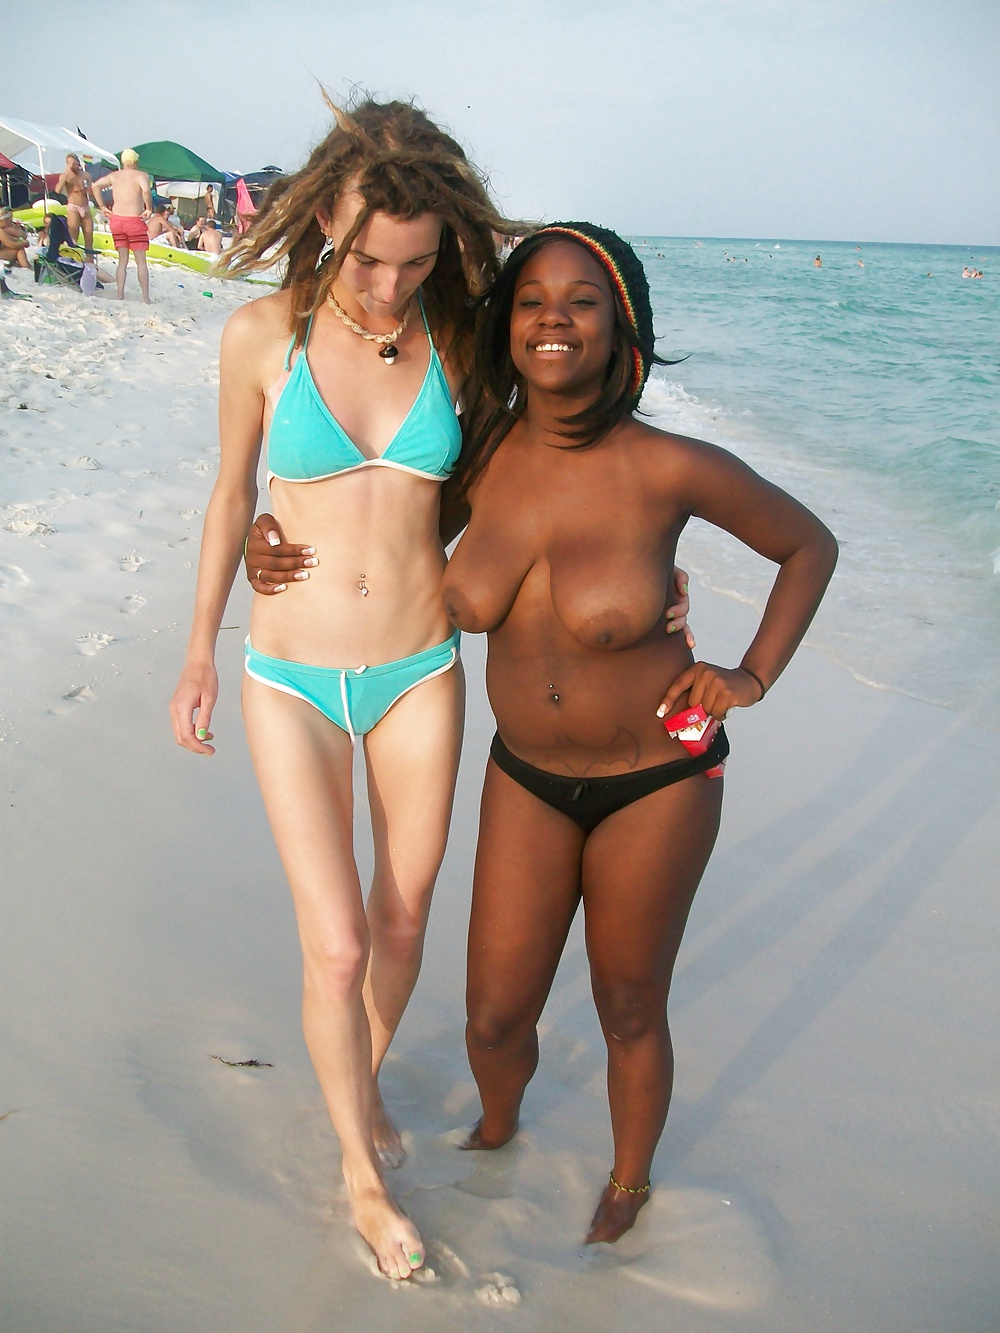 Ragazze nere in spiaggia: nudisti ed esibizionisti
 #27817075